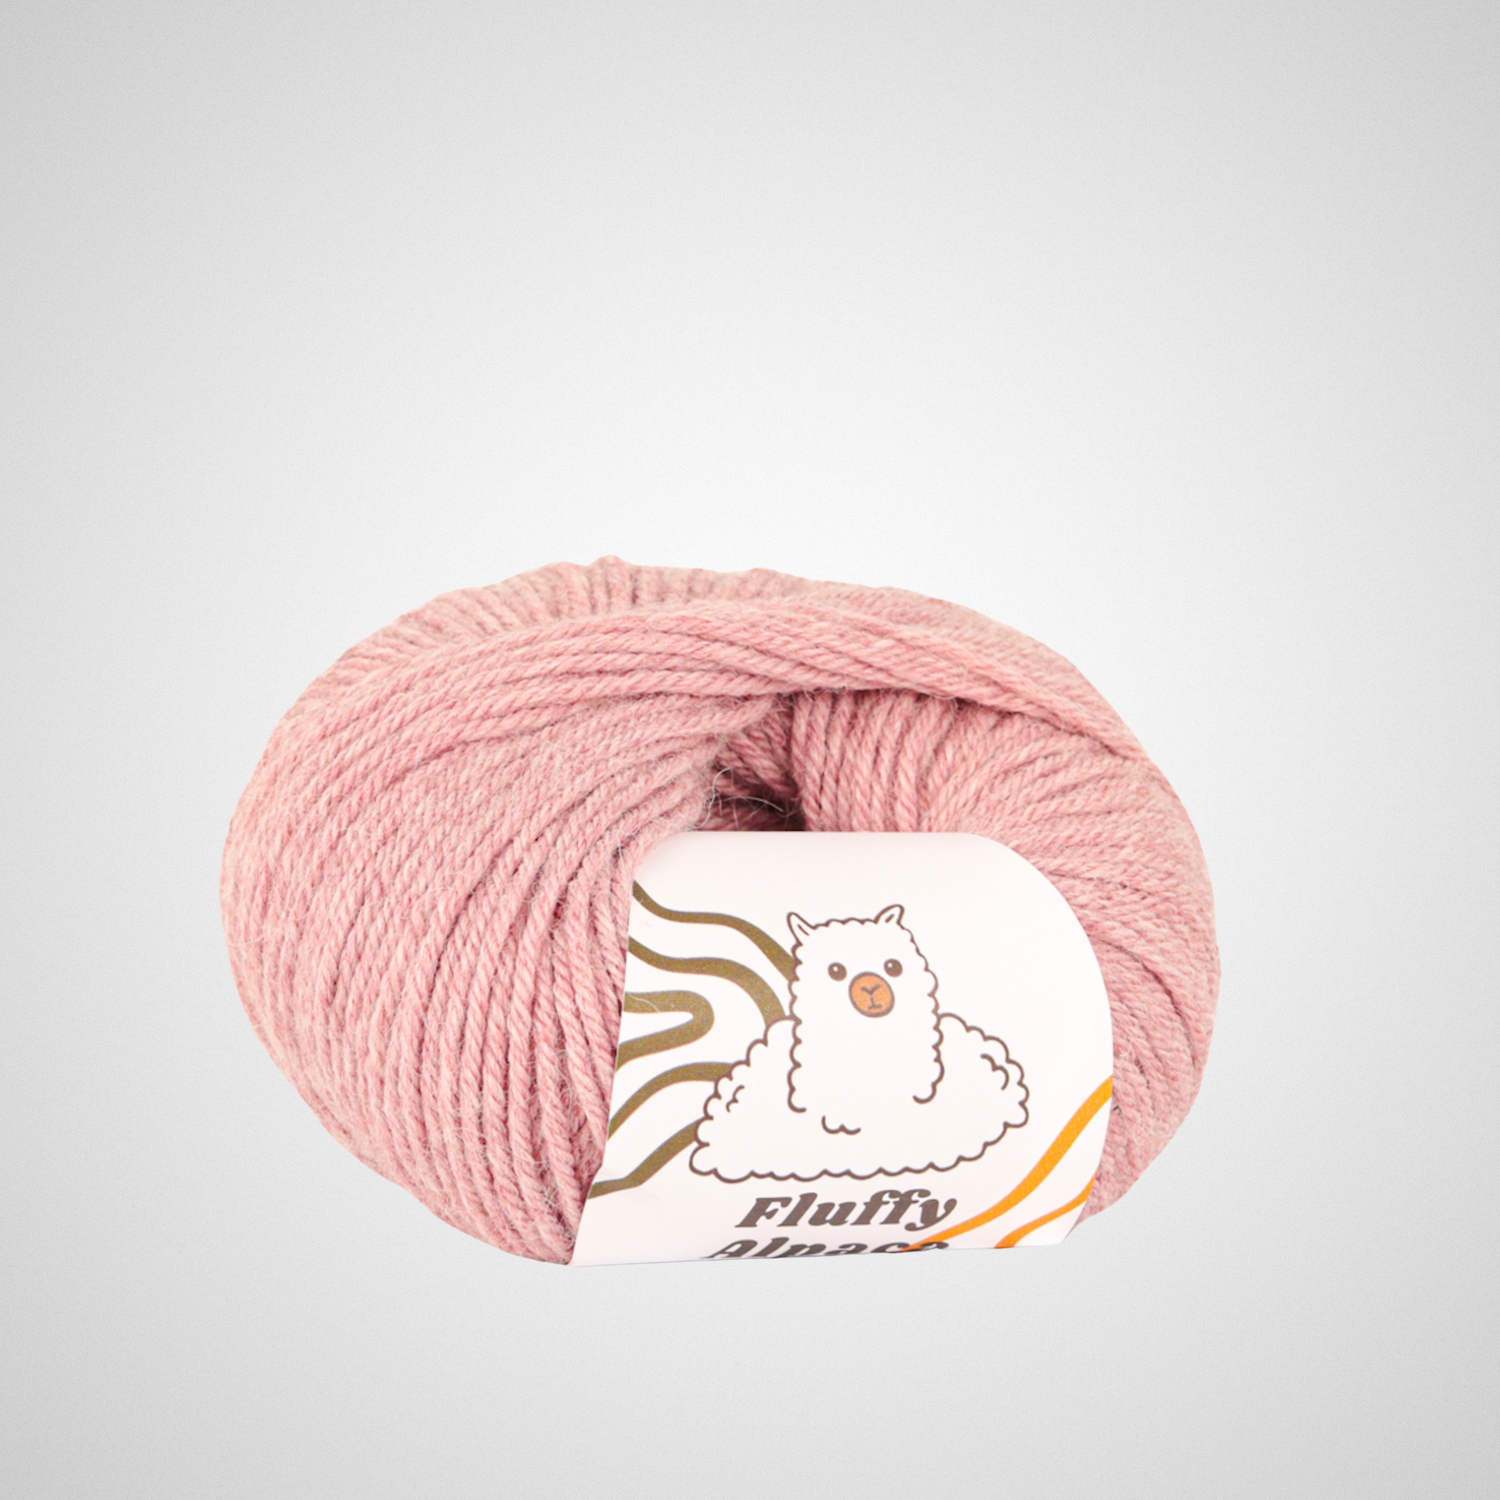 Fluffy Alpaca - Strickgarn - 100 % Alpakawolle - Alle Farben